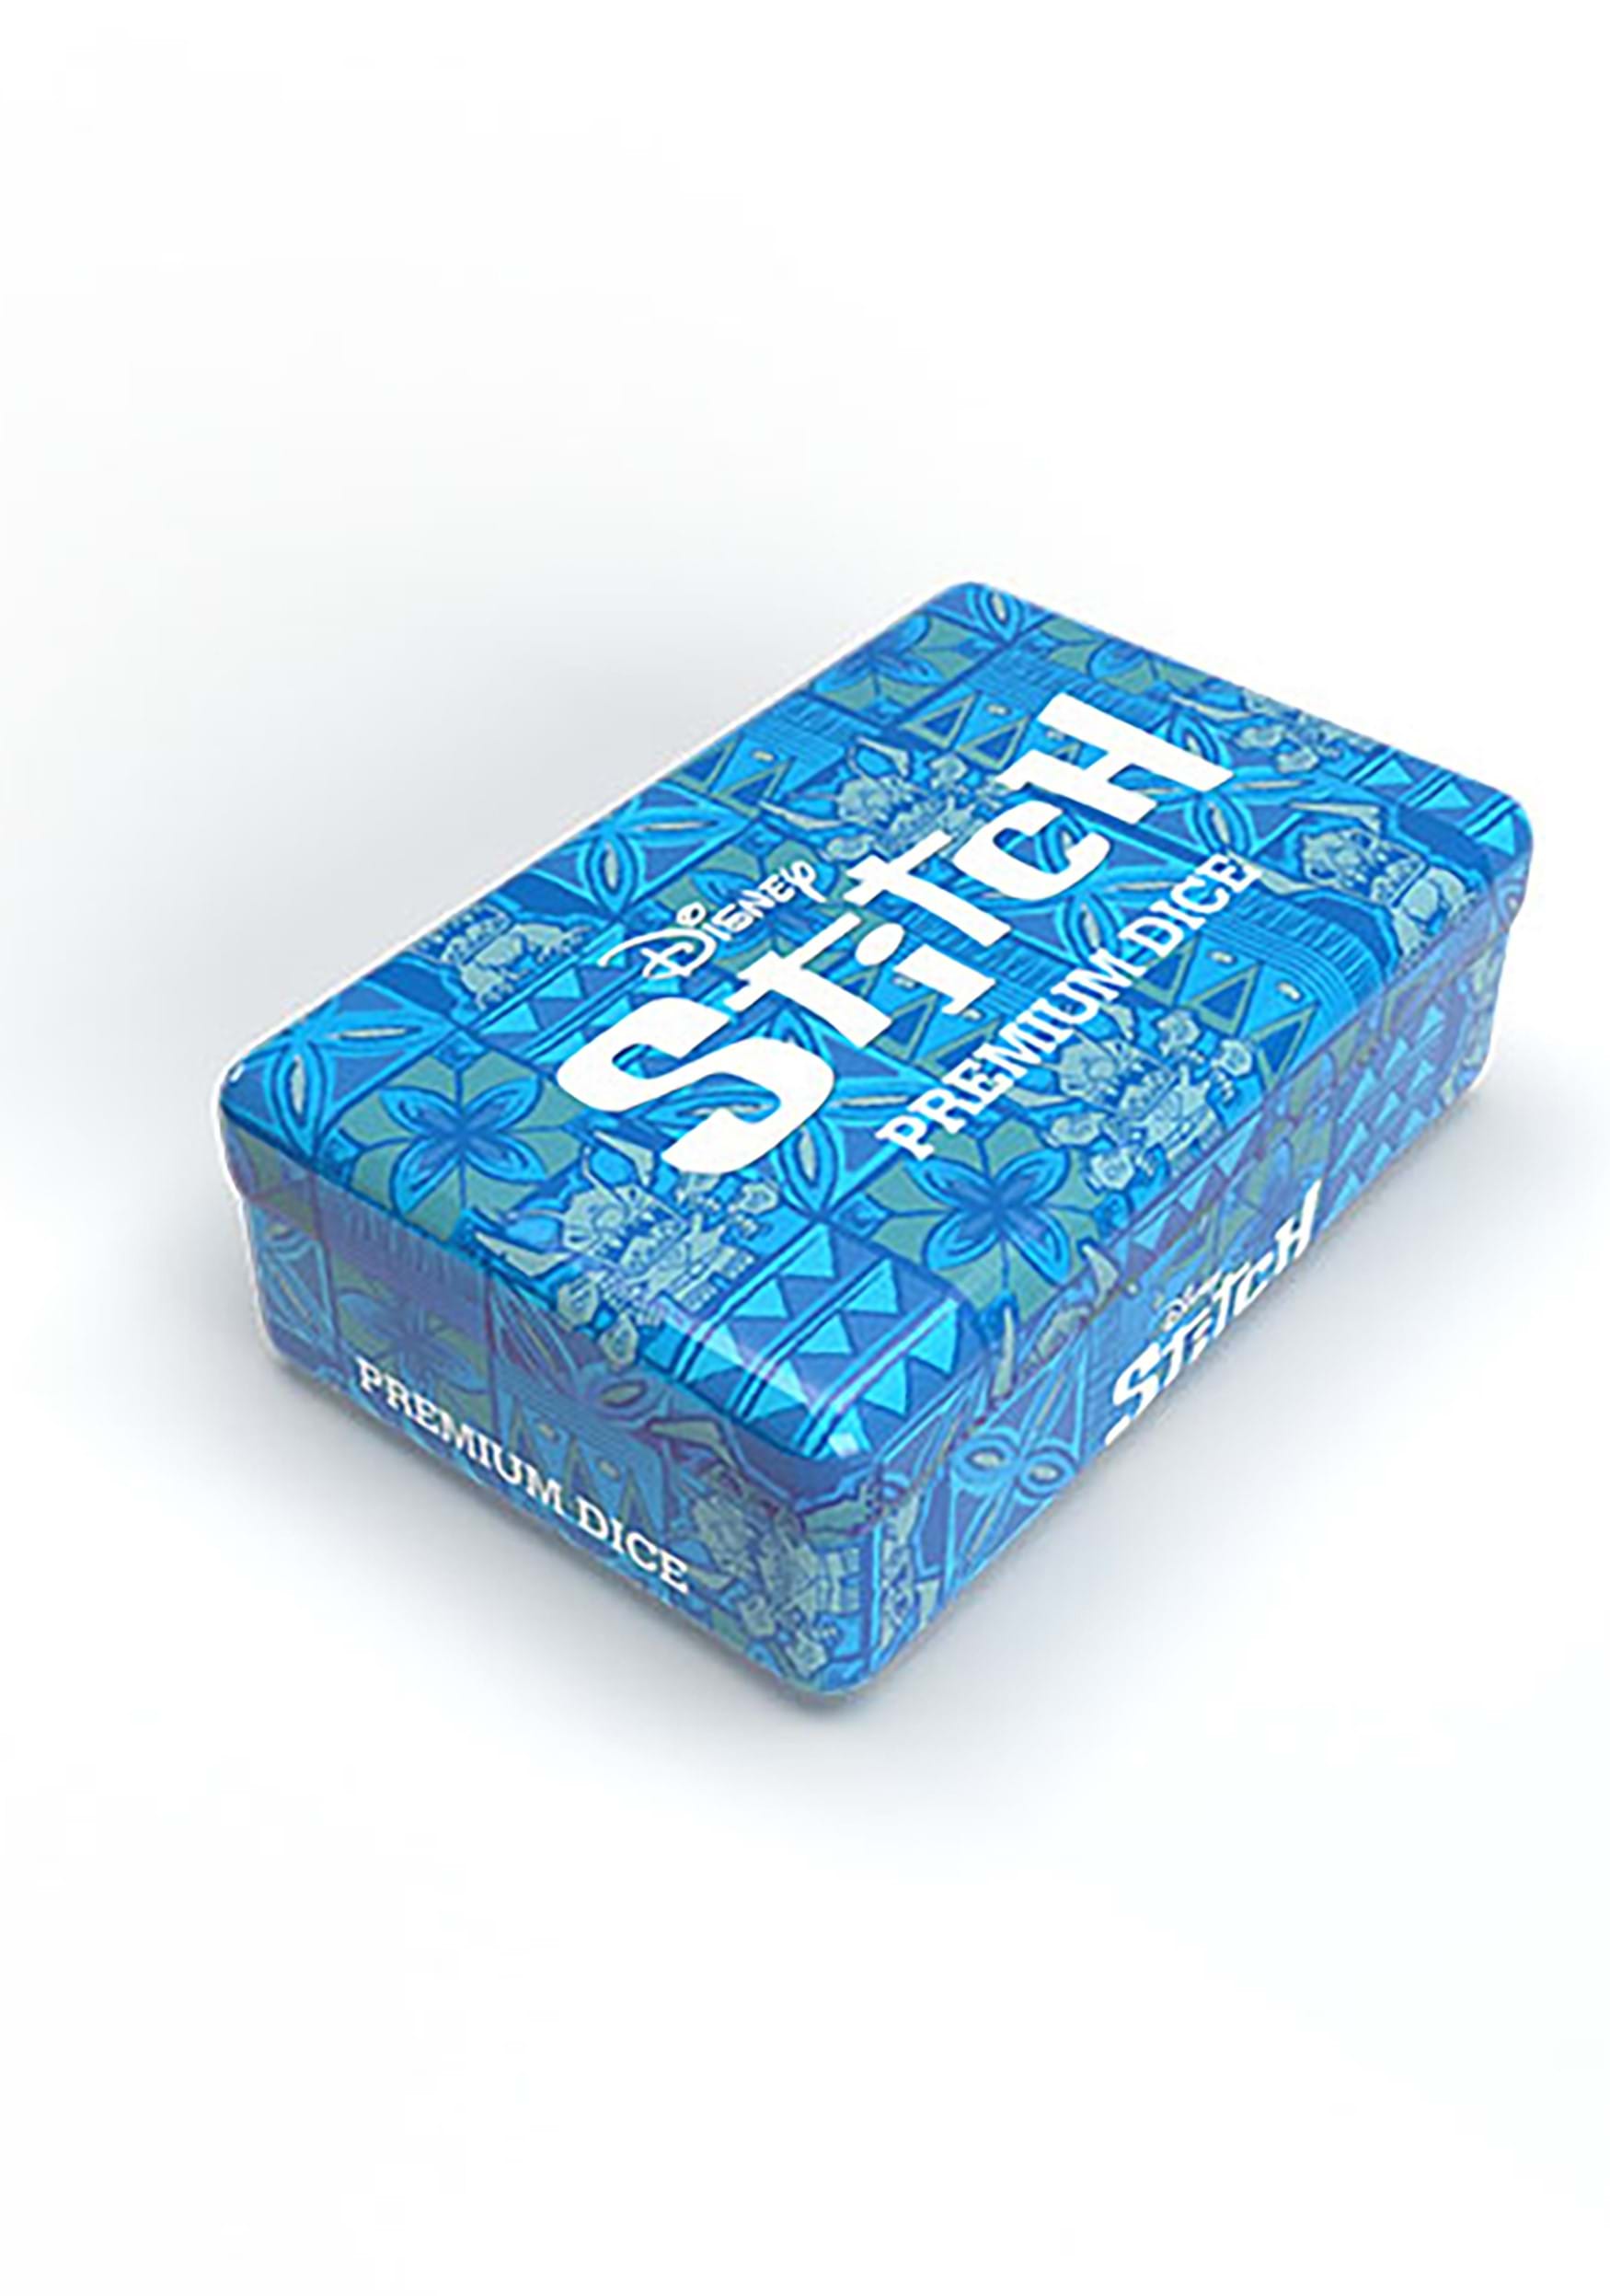 Lilo & Stitch Stitch Premium Dice Set - Entertainment Earth